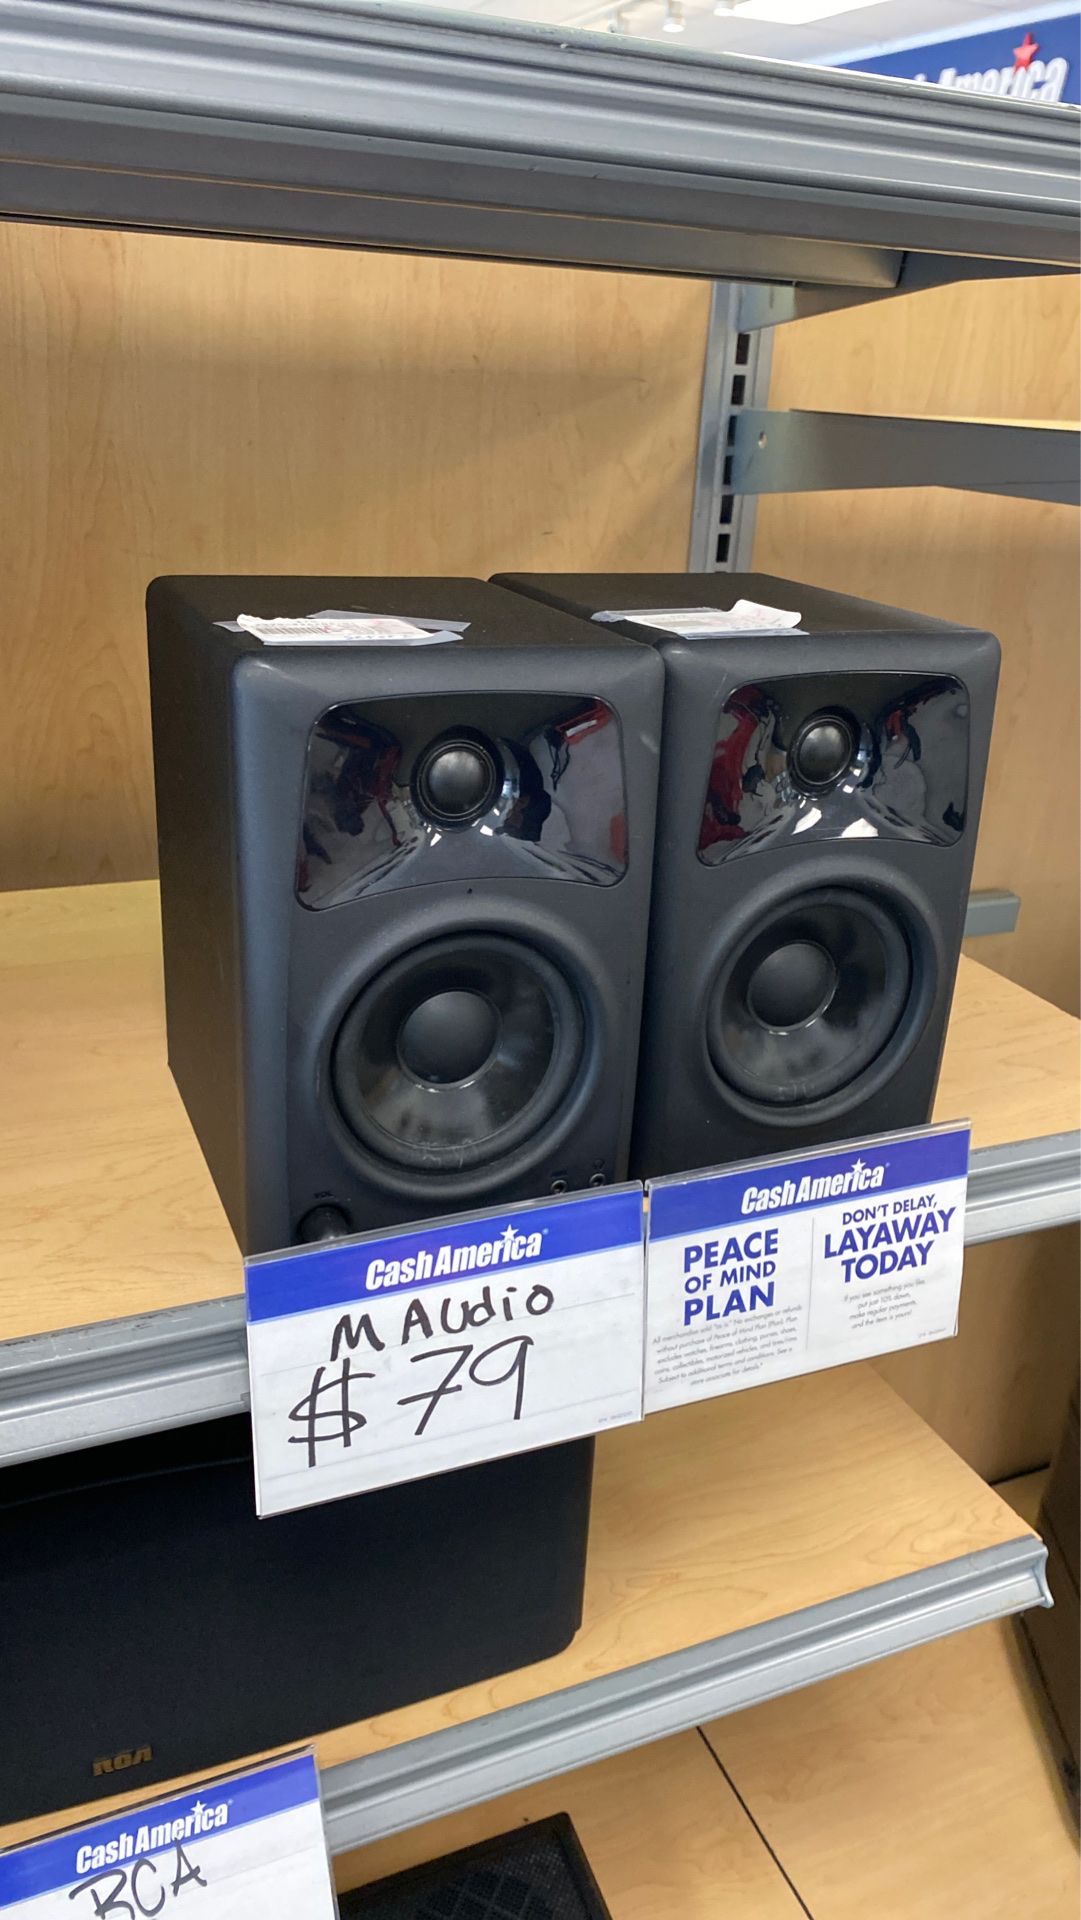 M audio speakers